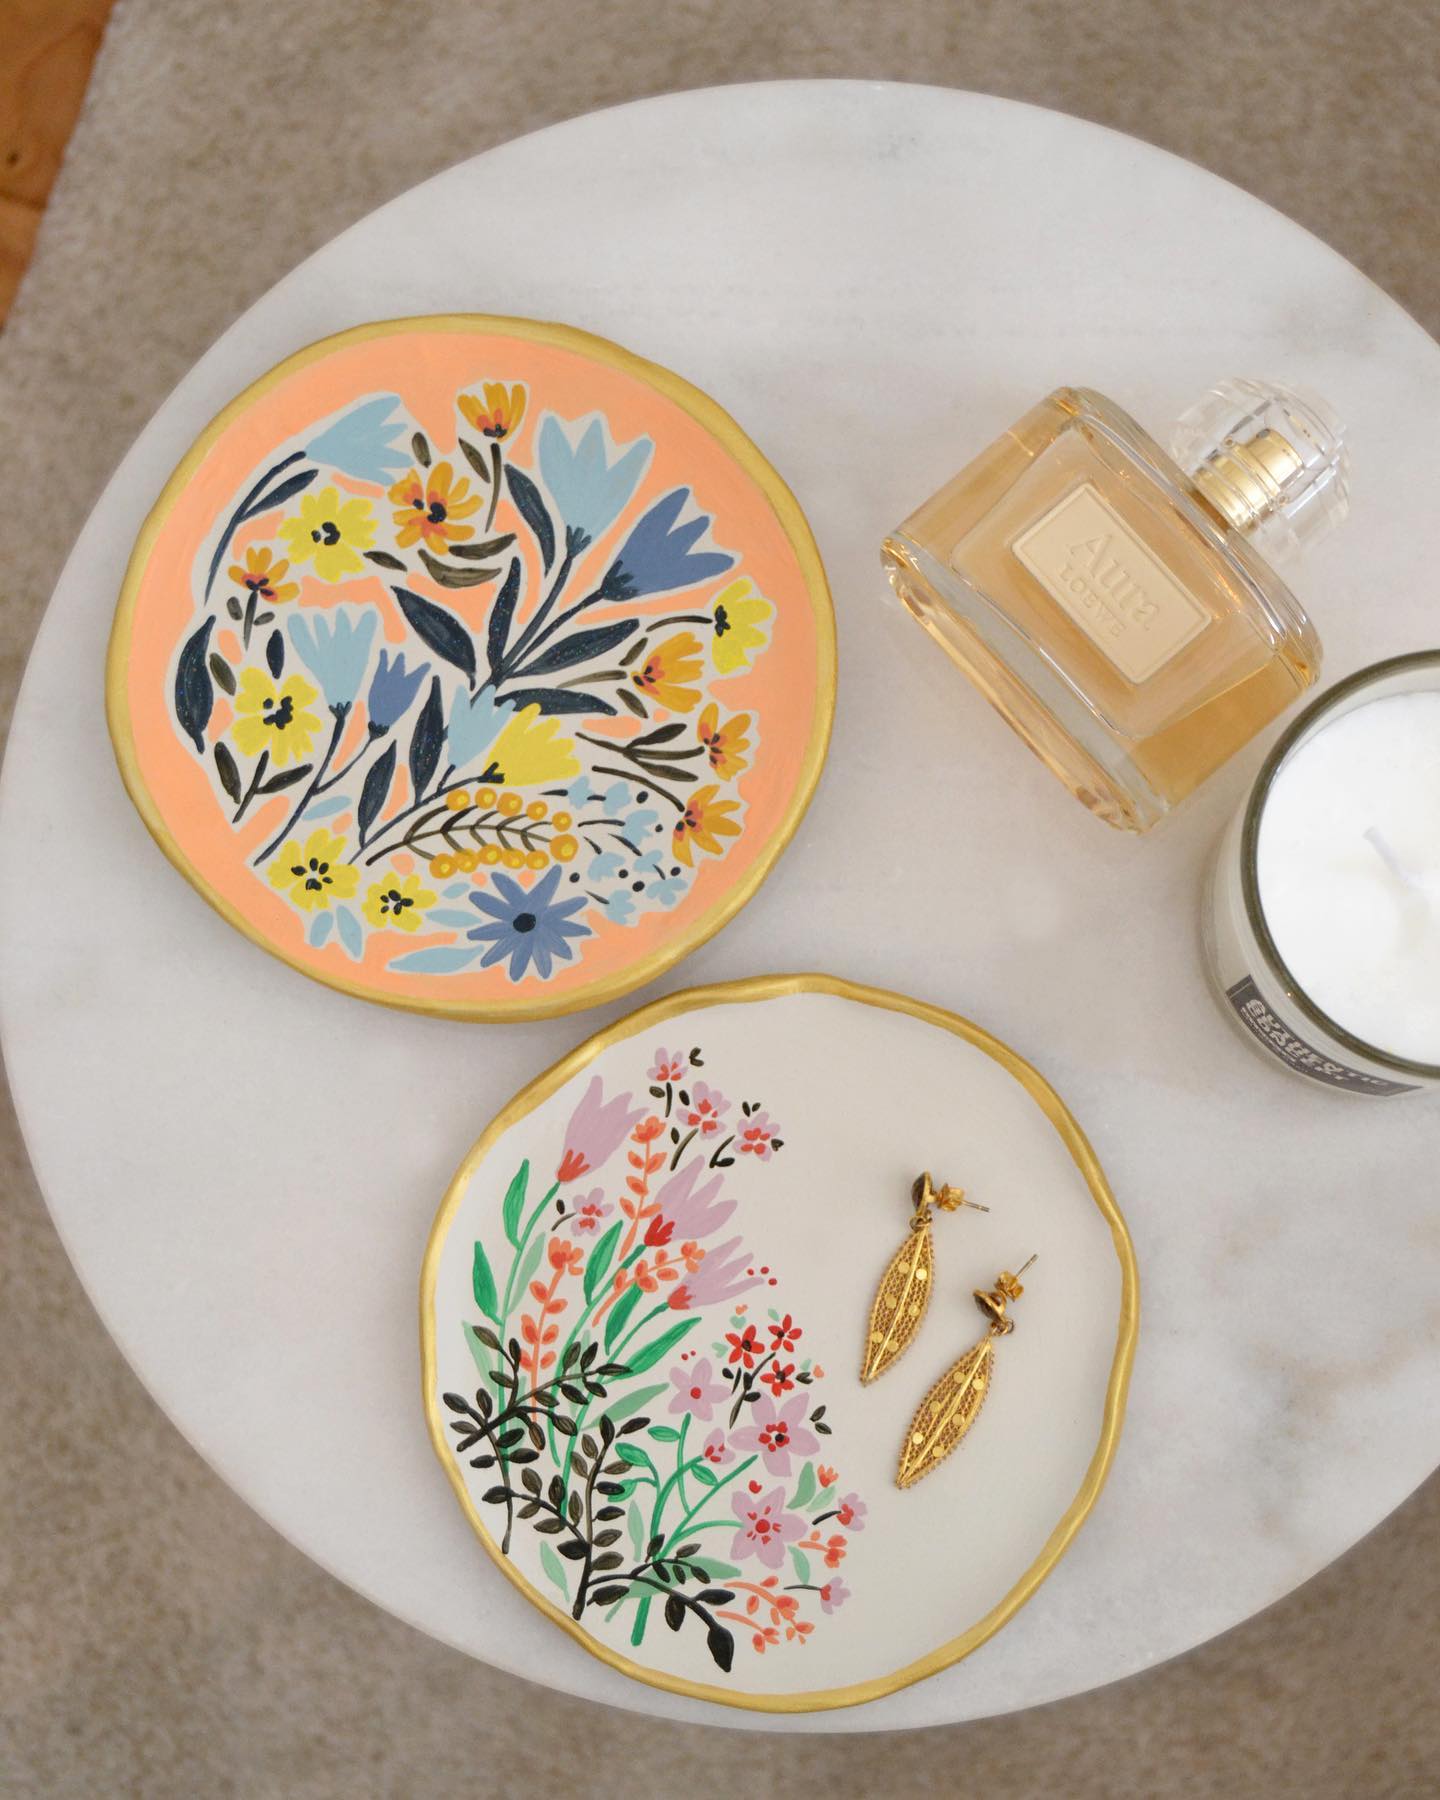 Cada pieza hecha a mano, 
Cada una diferente.
.
#plato #pintura #pinturasobreceramica #ceramica #barro #handmade #ceramicapintadaamano #hechoamano #home #decoracion #artesania #art #unico #floral #moniquilla